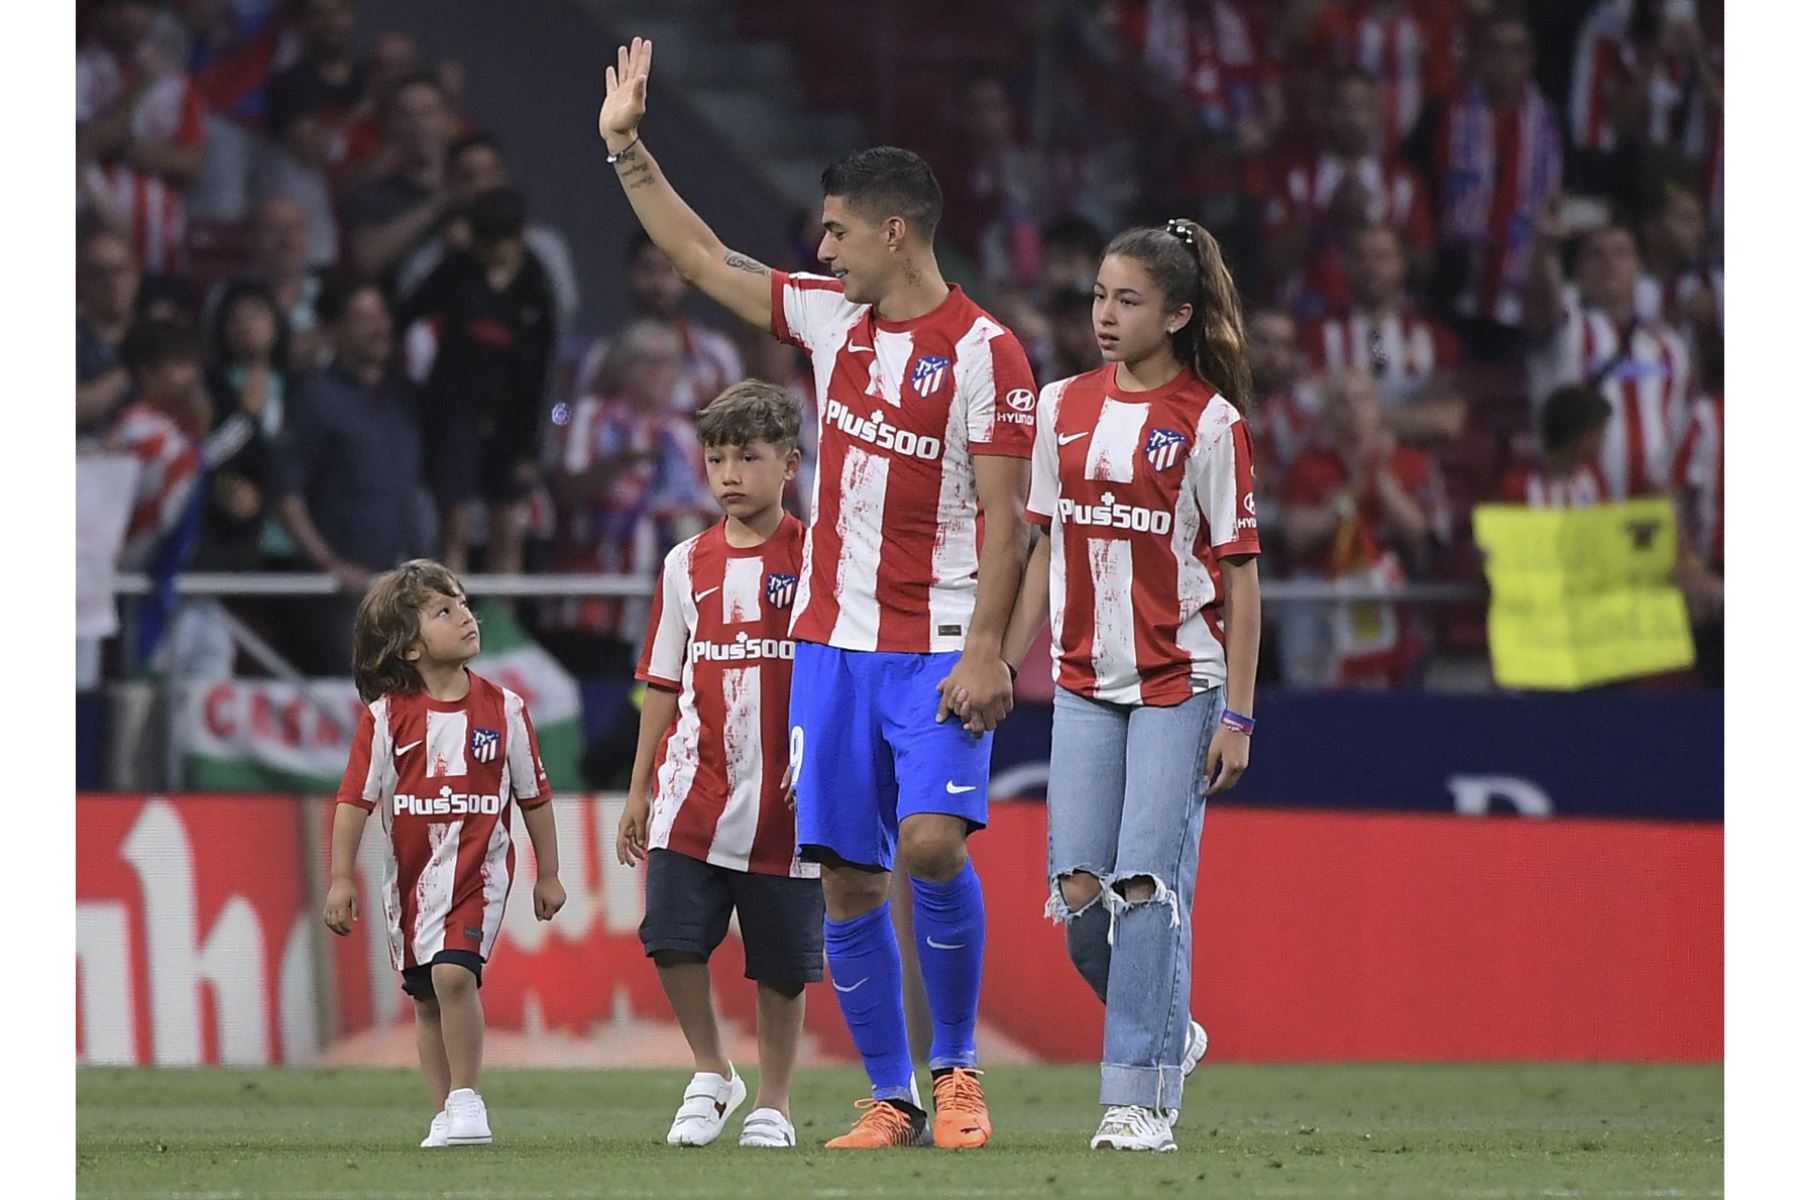 El delantero uruguayo del Atlético de Madrid, Luis Suárez, saluda a la multitud mientras camina por el campo junto a sus hijos, durante su despedida como en su club. Foto: AFP